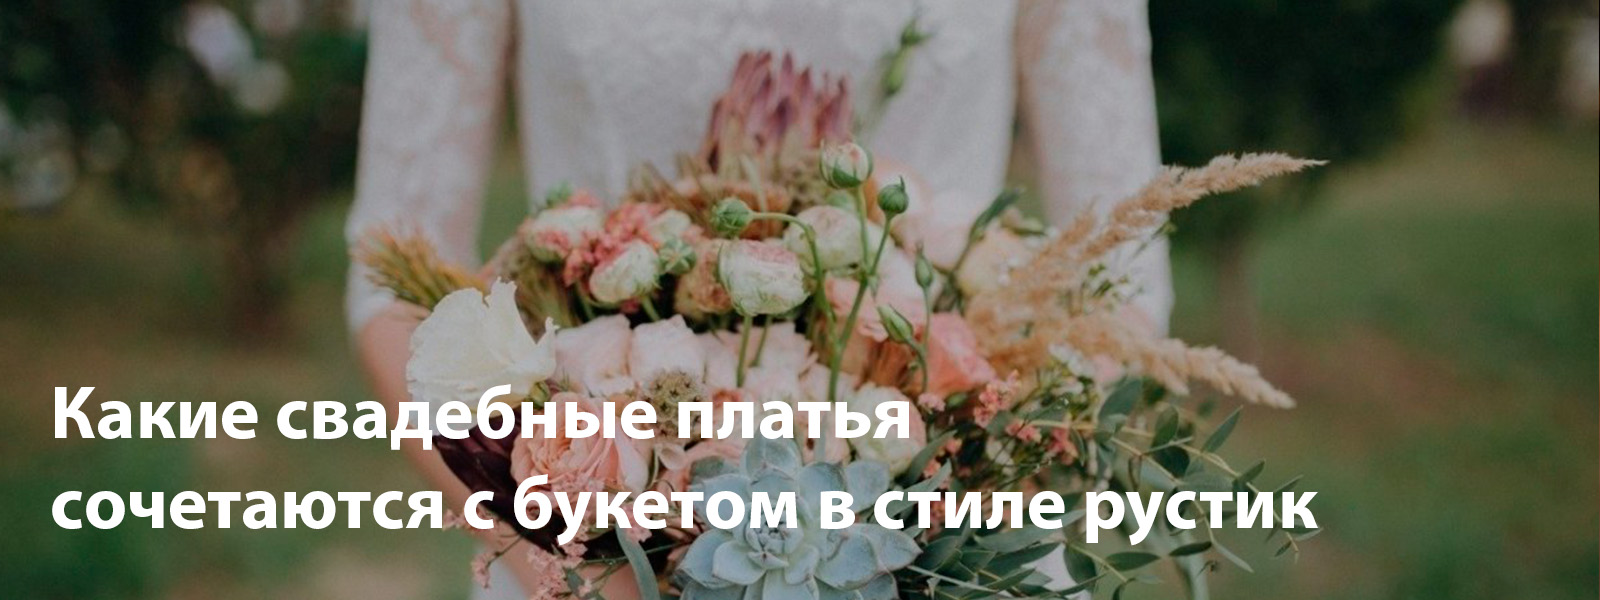 Какие свадебные платья сочетаются с букетом в стиле рустик